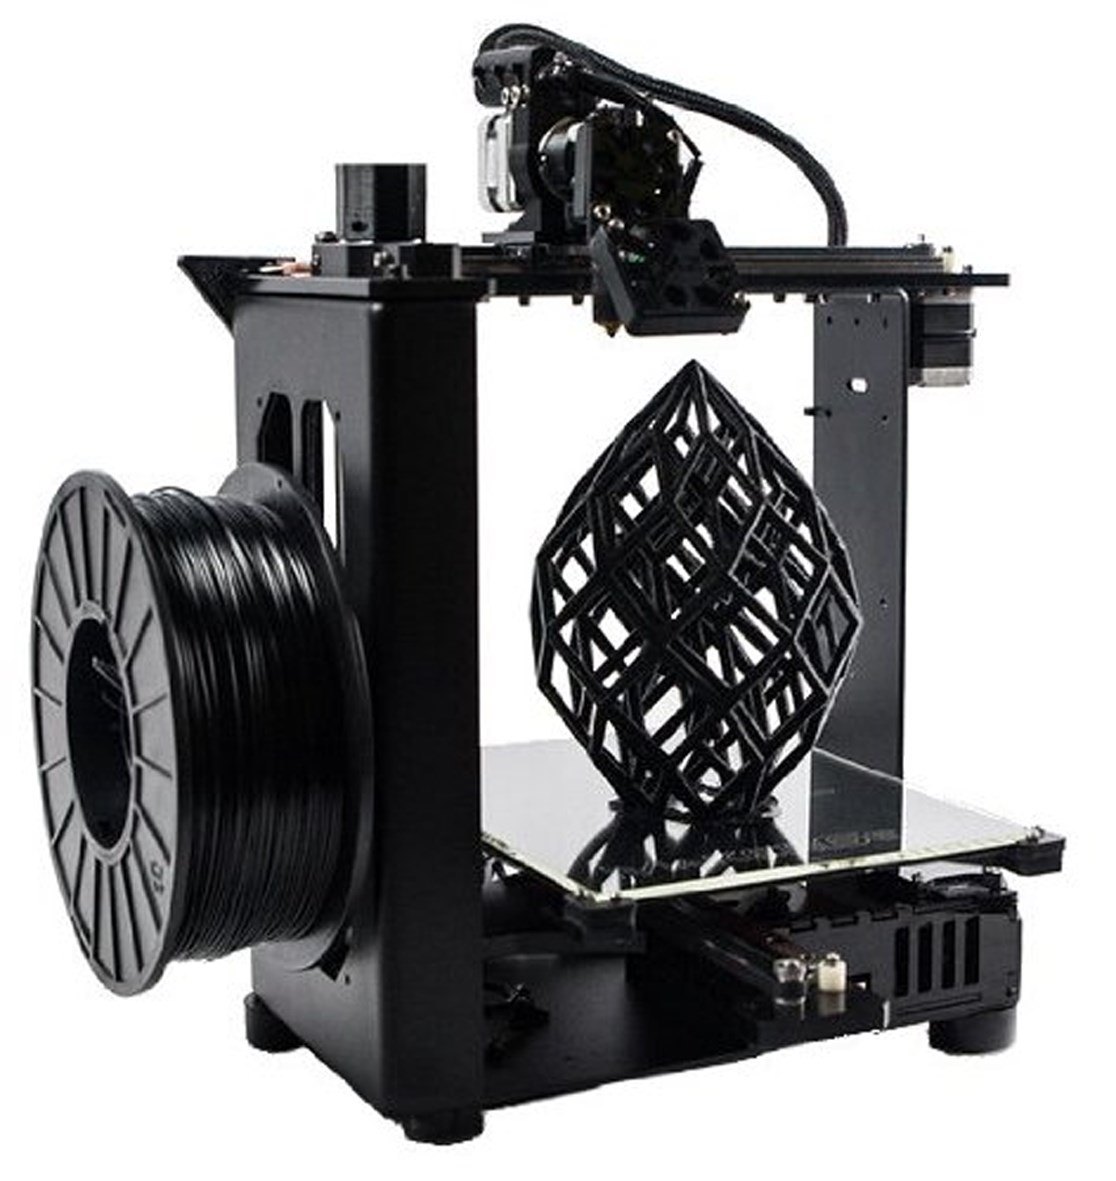 MakerGear 3D Small Printer